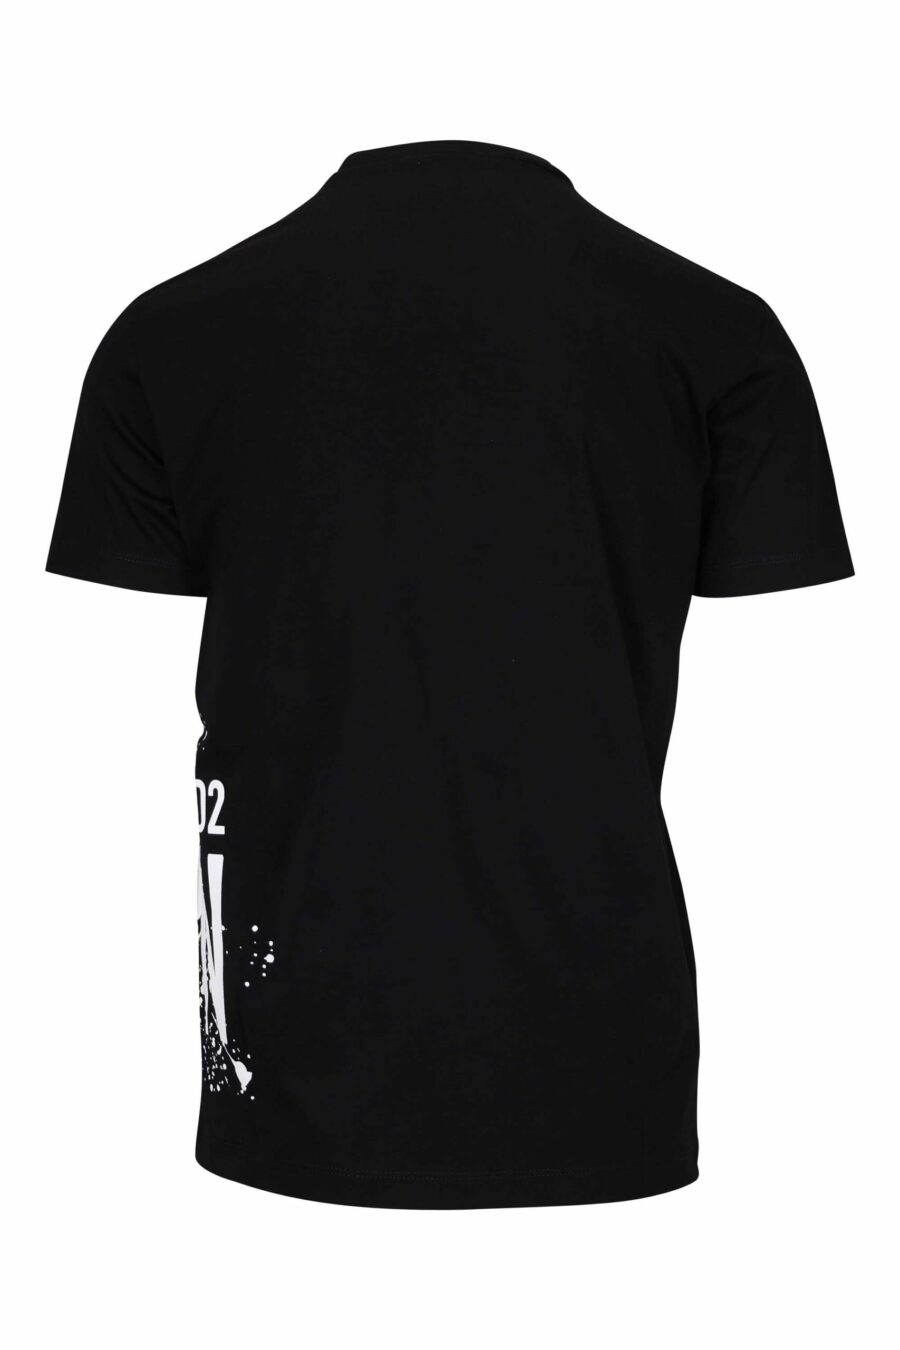 Camiseta negra con maxilogo "icon splash" bajo - 8054148293758 1 scaled